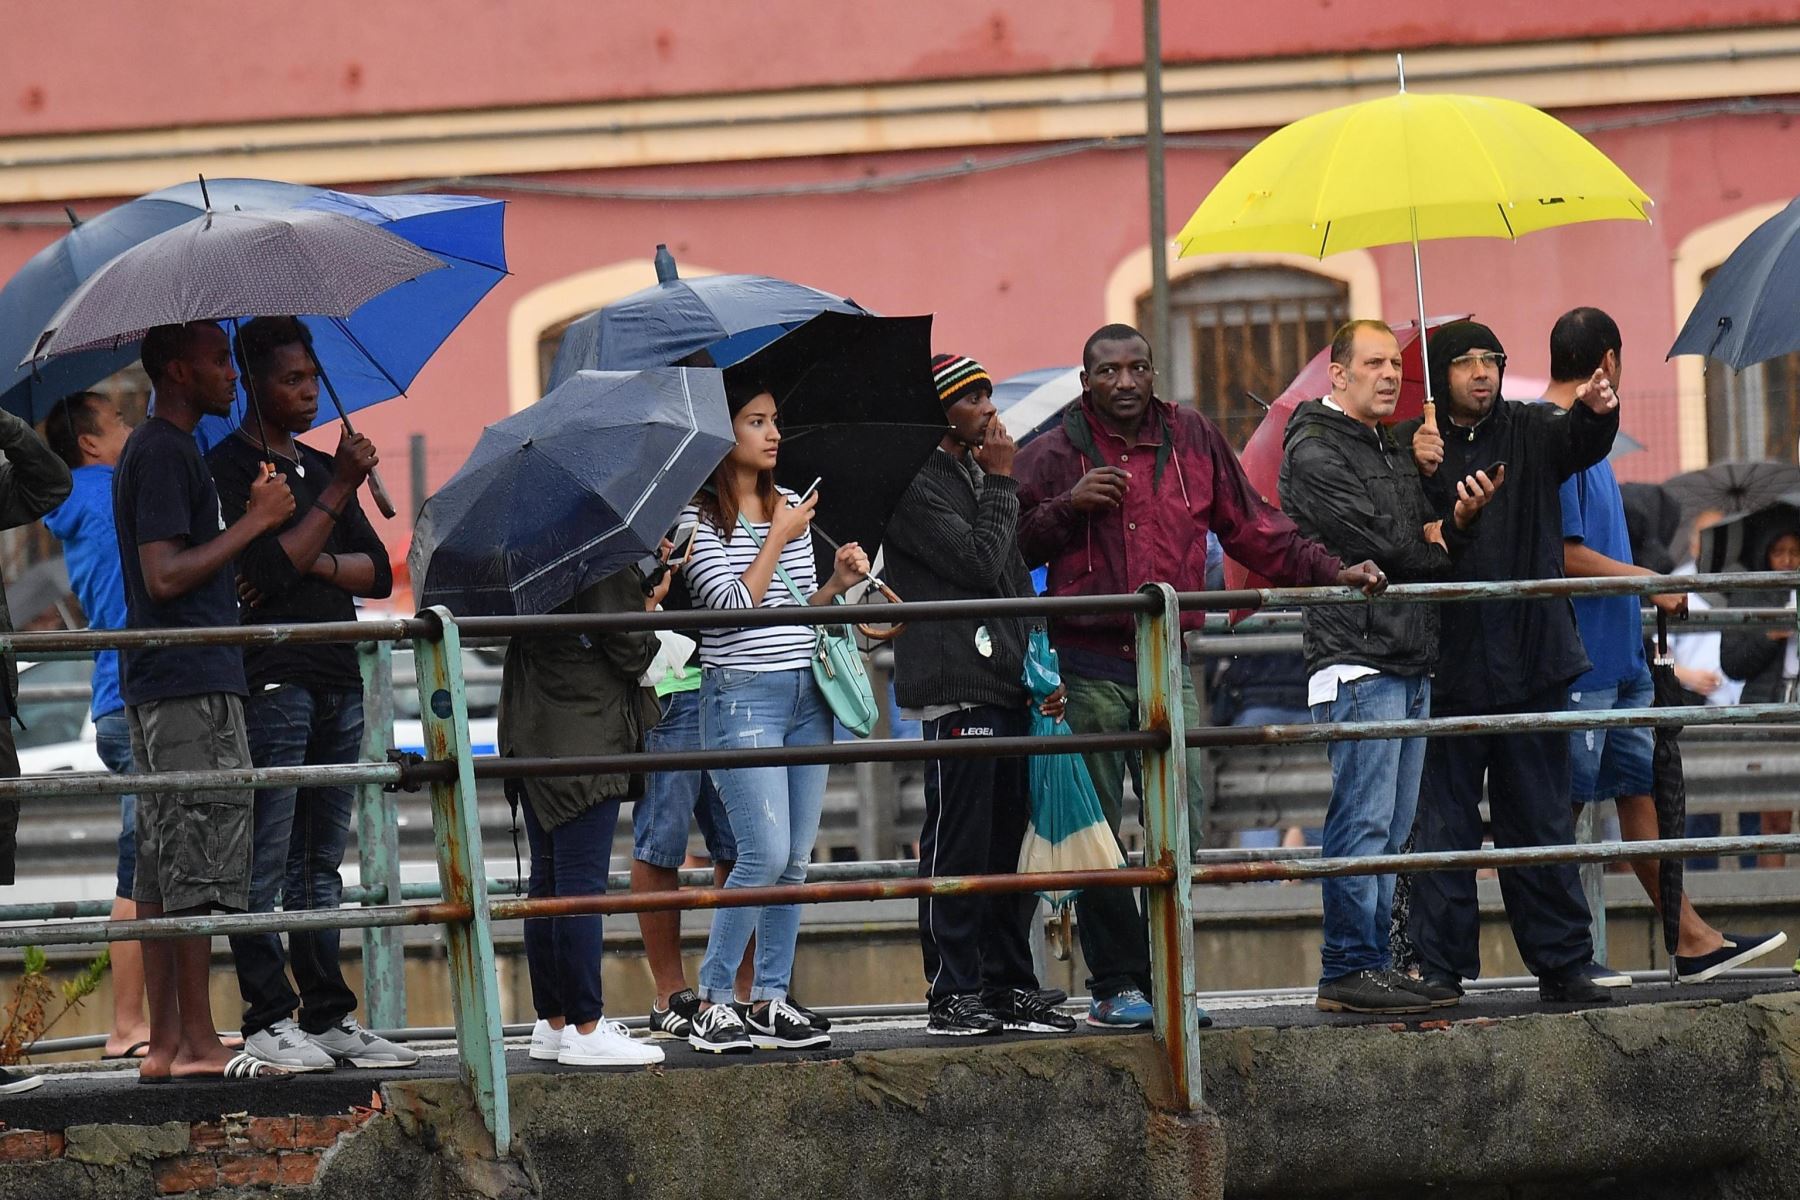 Varios ciudadanos observan los trabajos de los miembros de los servicios de emergencia tras derrumbarse una sección del viaducto Morandi en Génova (Italia) hoy, 14 de agosto de 2018. EFE